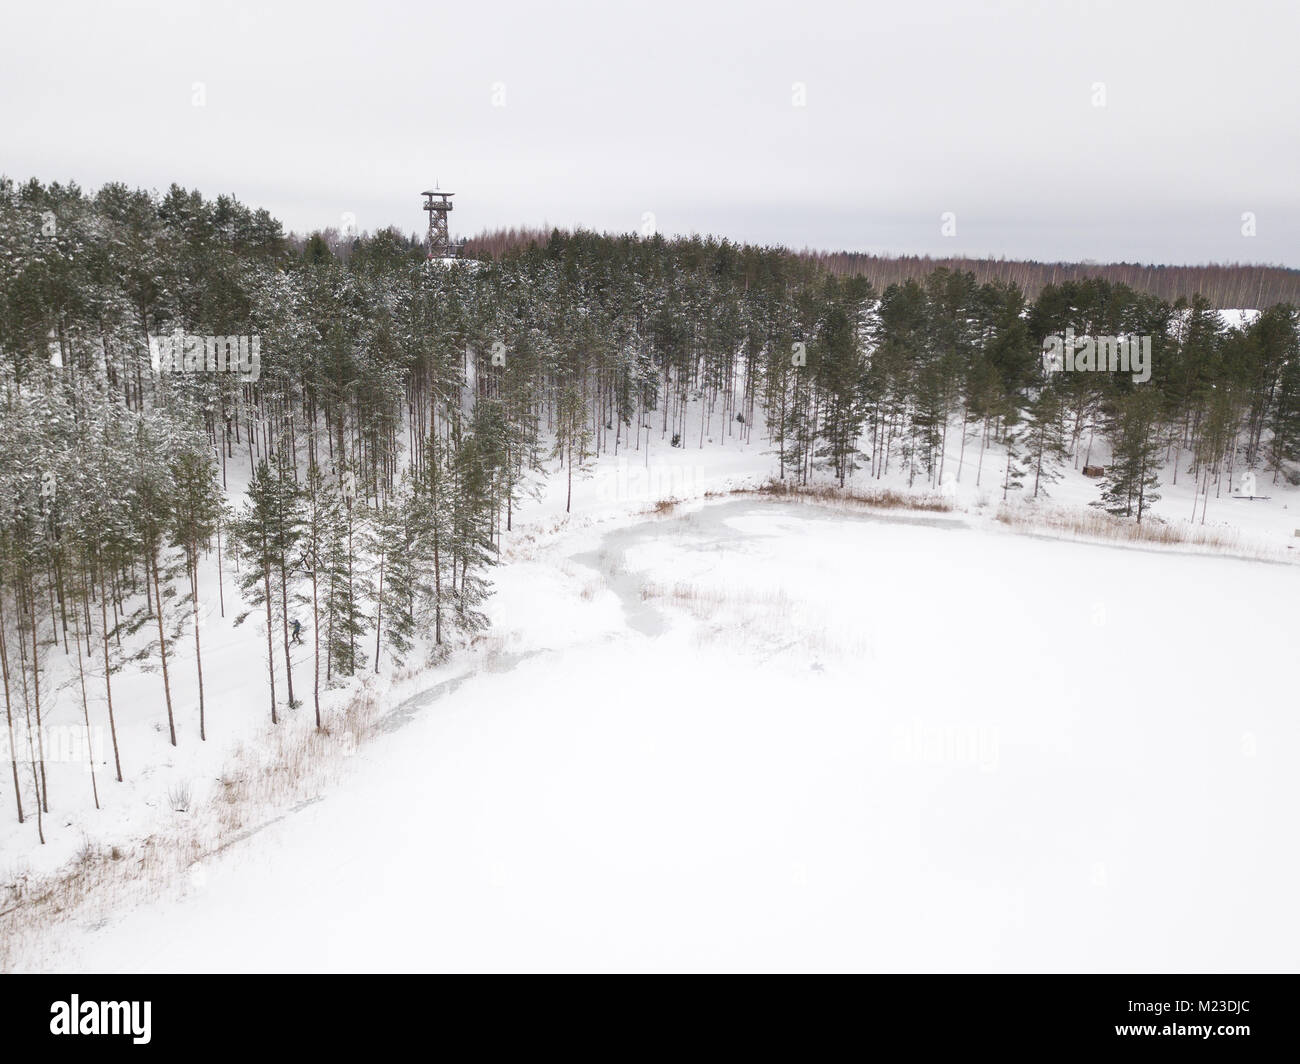 Luftaufnahme von einen Wachturm an einem verschneiten Wintertag. Tartu, Estland. Stockfoto